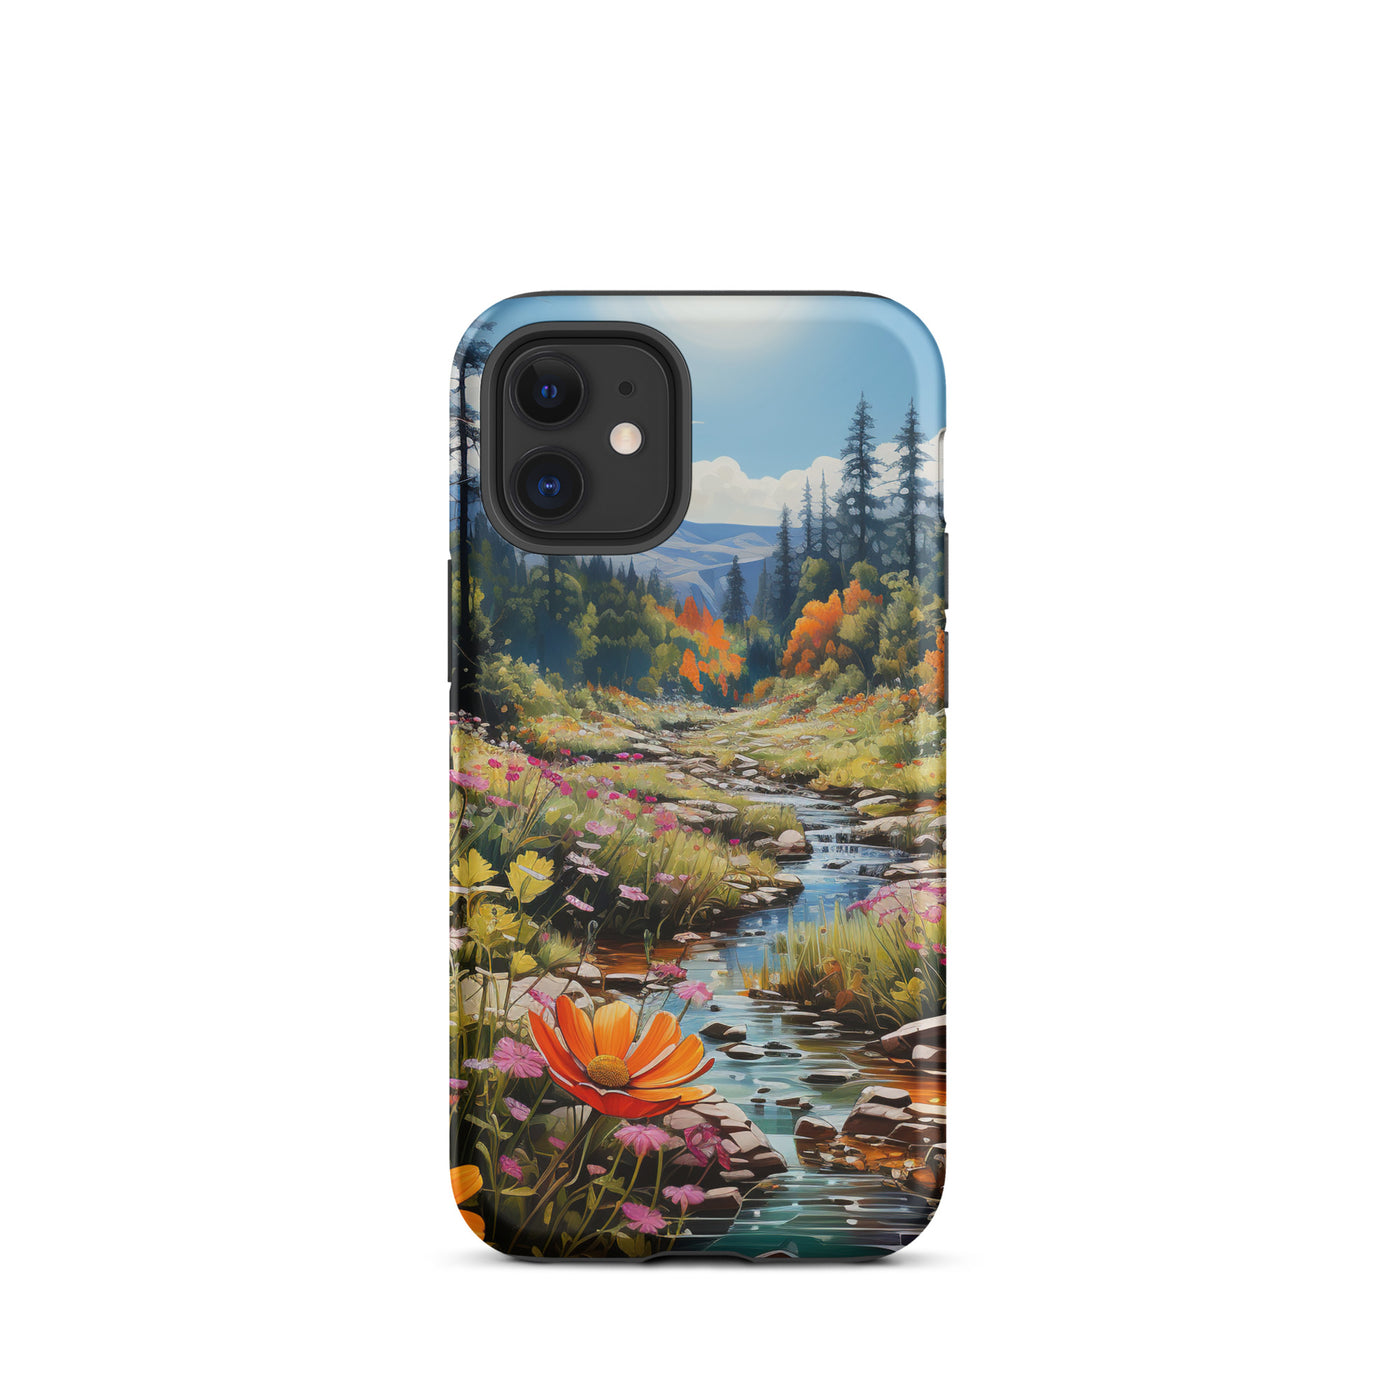 Berge, schöne Blumen und Bach im Wald - iPhone Schutzhülle (robust) berge xxx iPhone 12 mini